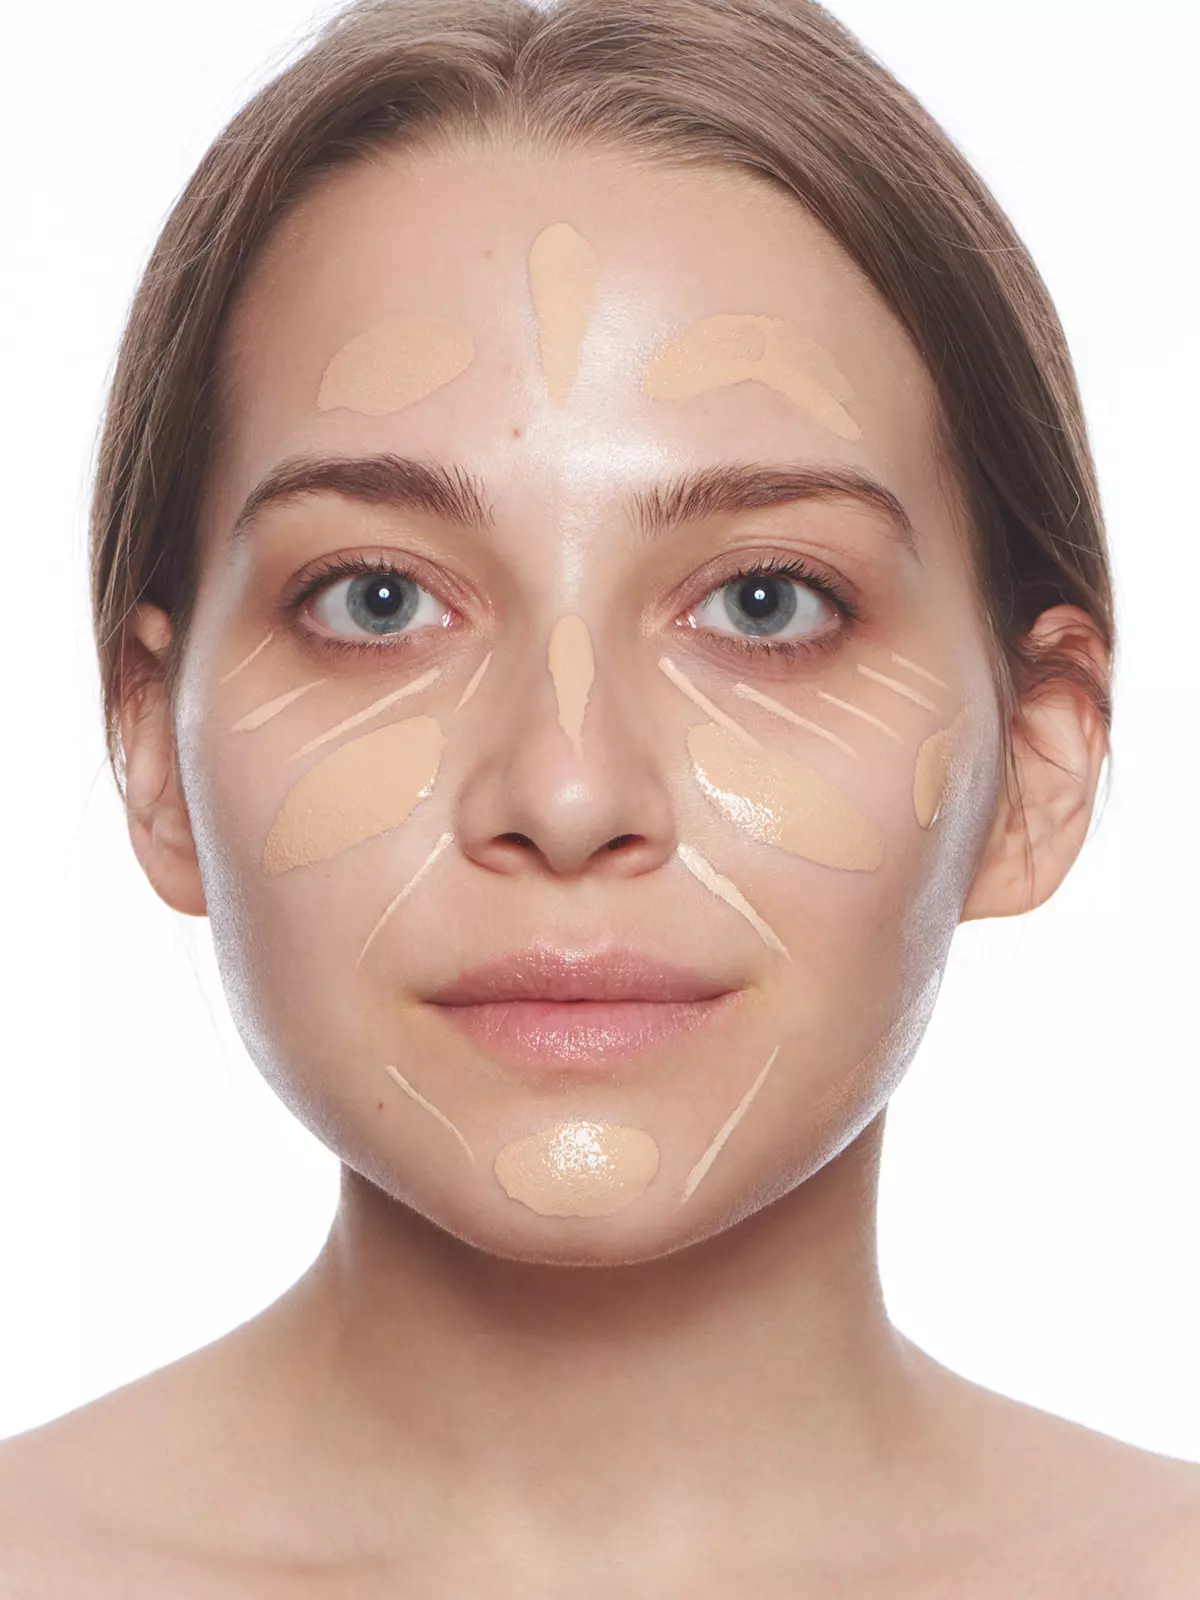 Πού να εφαρμόσετε σκόνη; Πώς να ζωγραφίσει το πρόσωπό της και τι χρειάζεται στο μακιγιάζ; Εφαρμογή της ανίχνευσης και μεταλλικής σκόνης βήμα προς βήμα. Είναι δυνατόν να εφαρμοστεί σε ένα καθαρό πρόσωπο; 16011_21